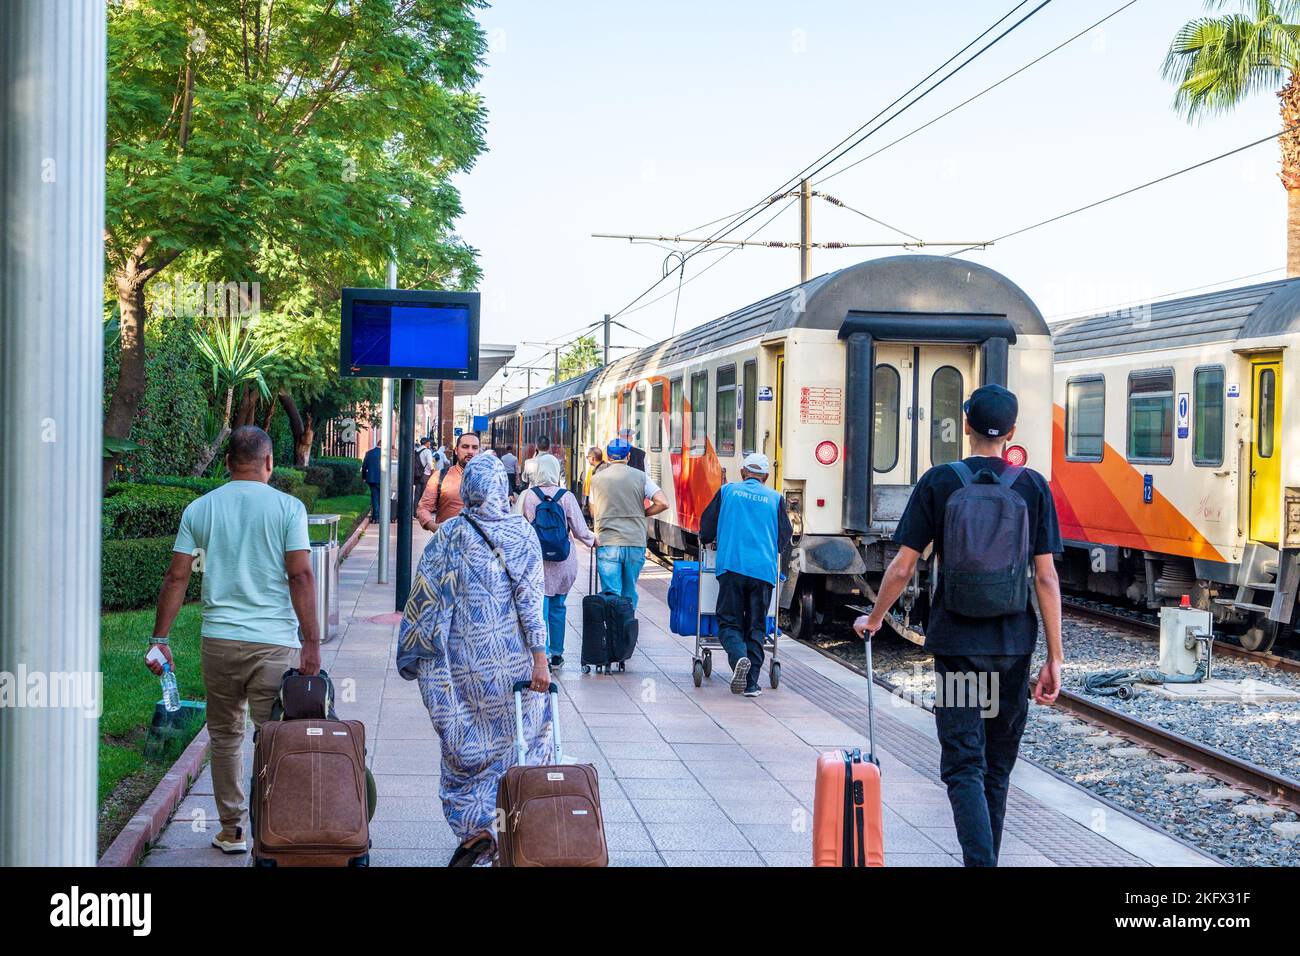 Bahnreisen in Marokko - Passagiere im Begriff, einen Zug am Bahnhof von Marrakesch zu besteigen Stockfoto